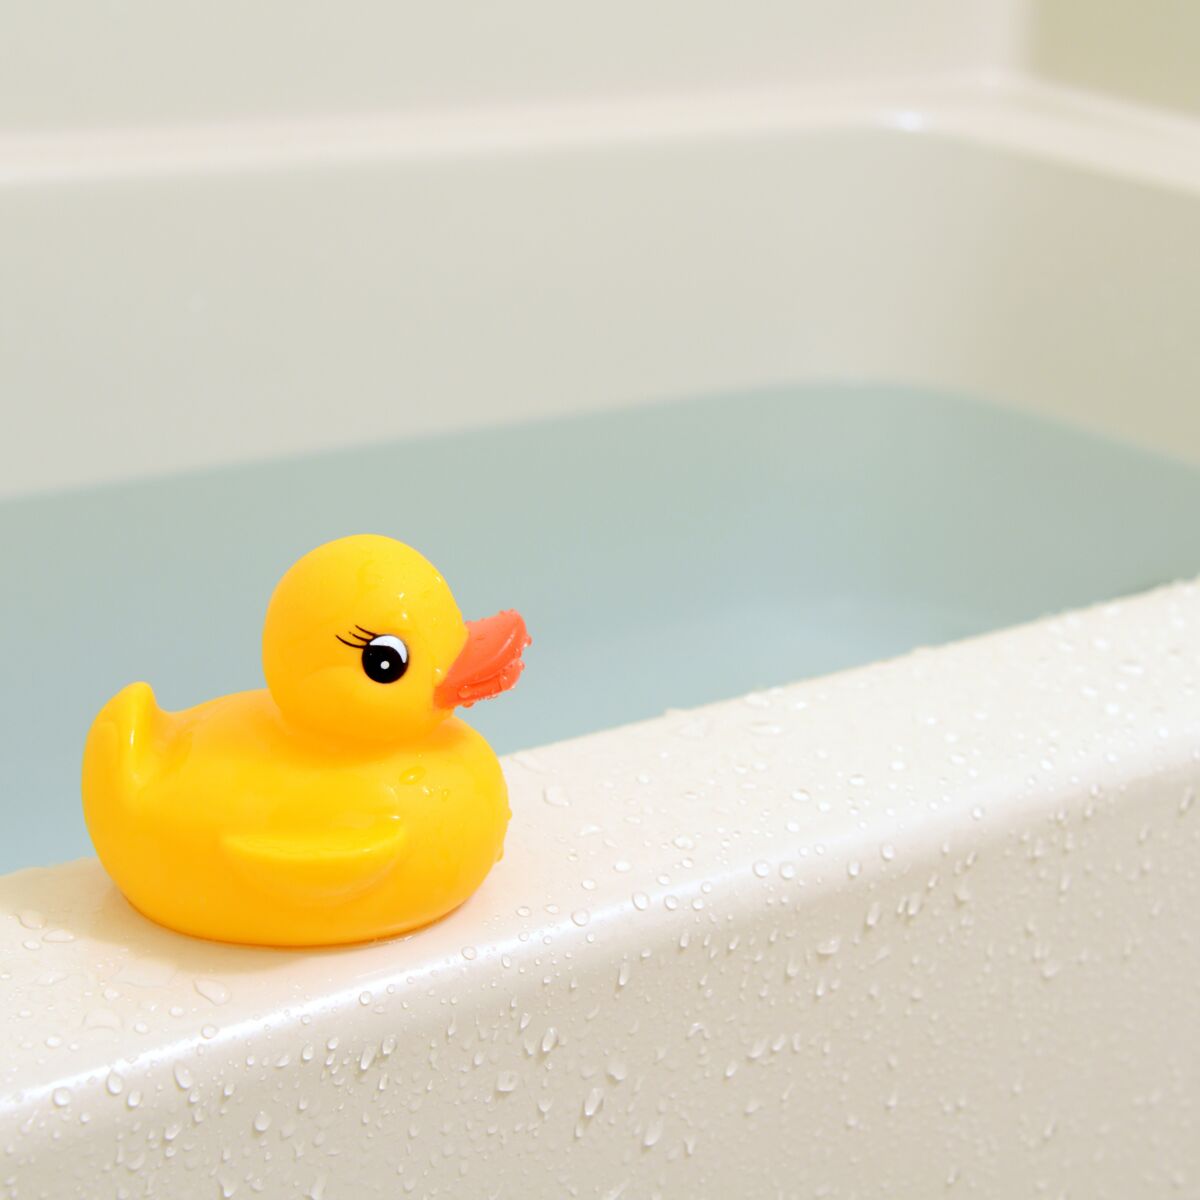 Une étude alerte sur les dangers des jouets de bain pour les